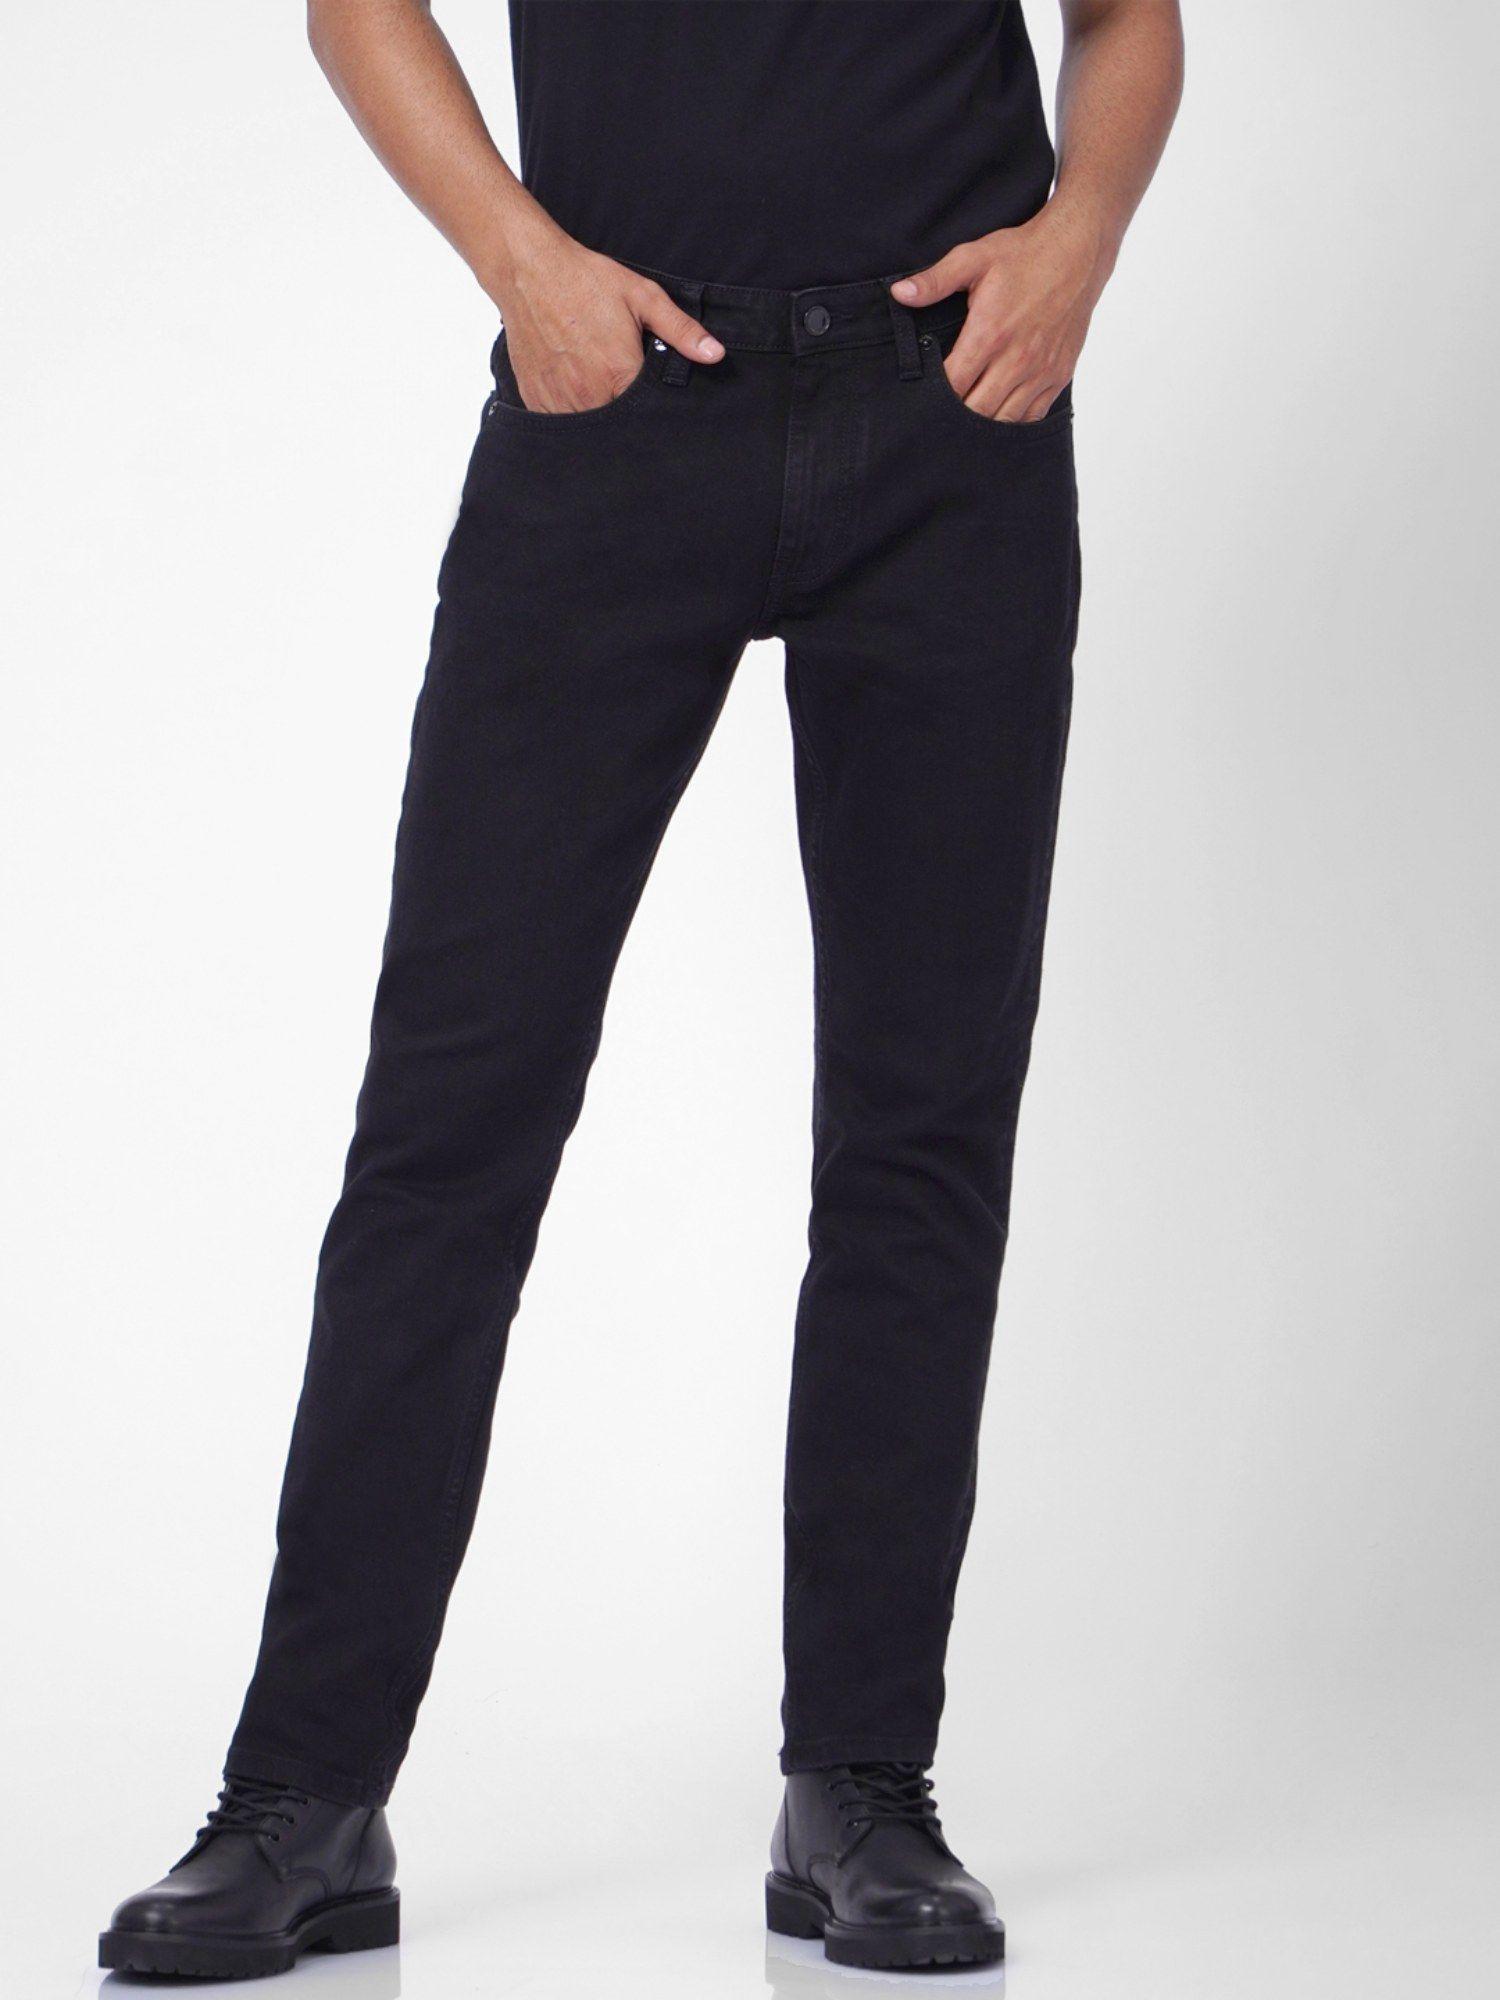 men-solid-black-jeans